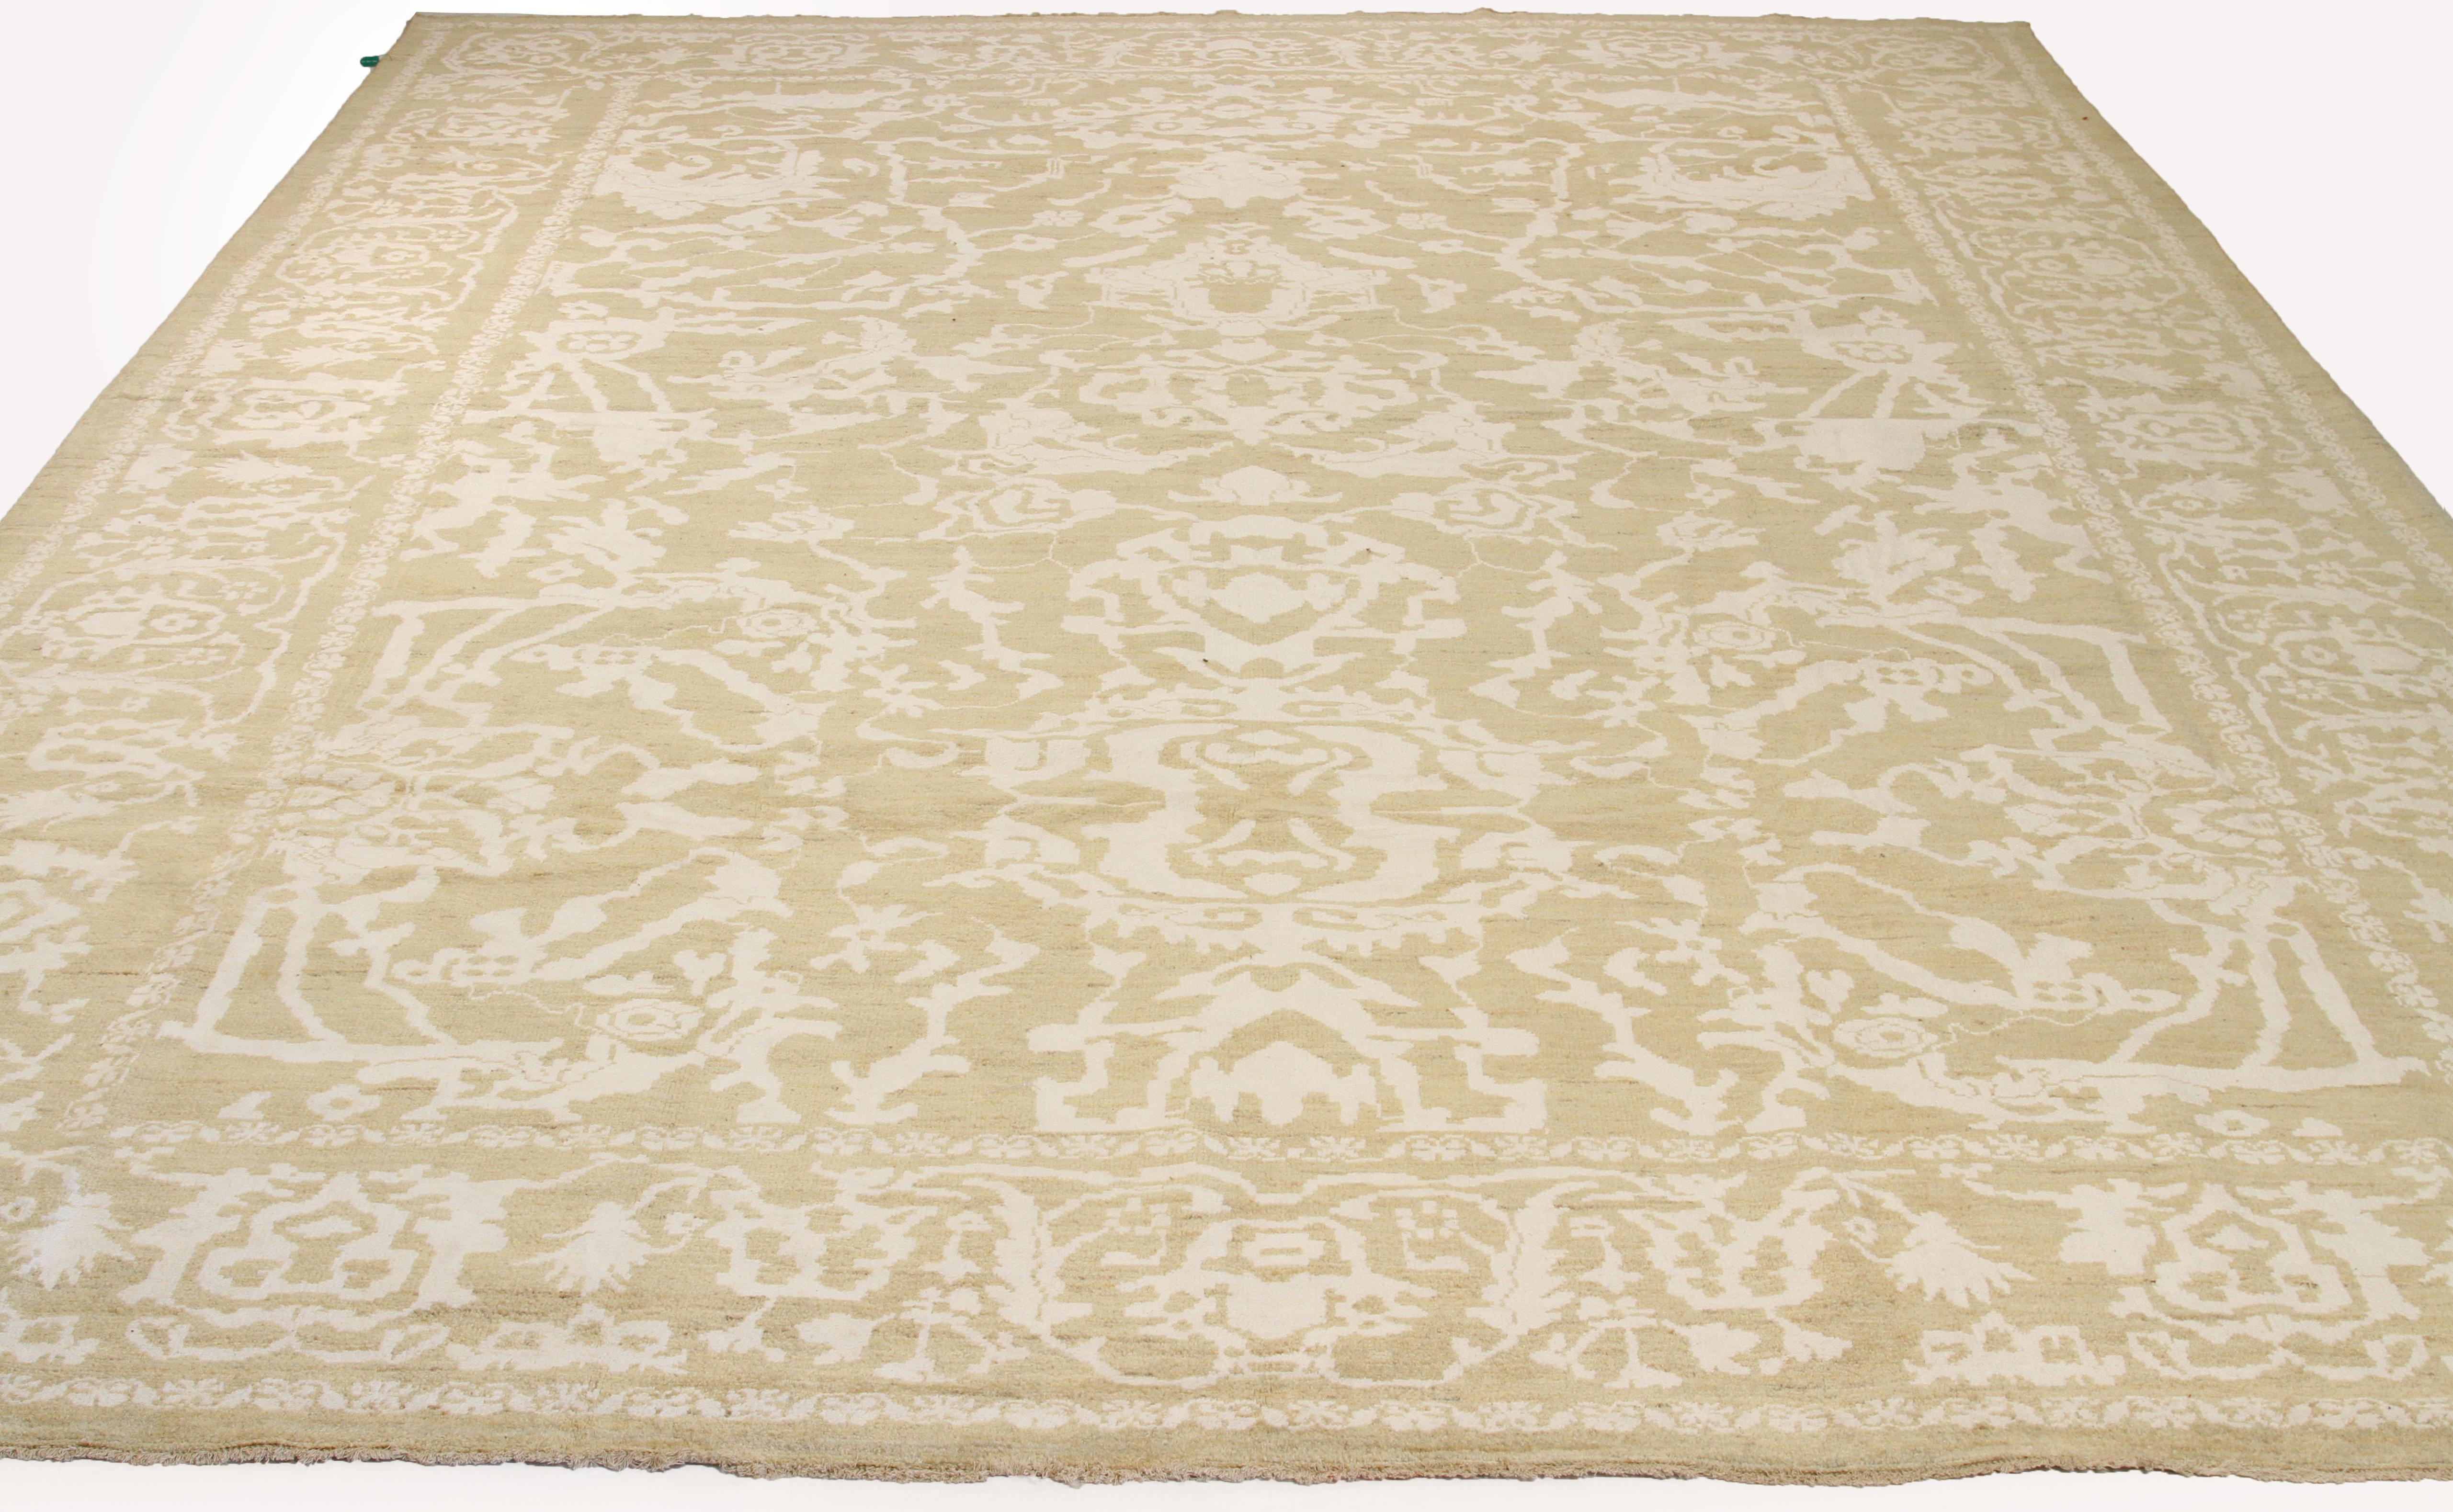 Moderner handgeknüpfter türkischer Teppich aus feiner Wolle und natürlichen pflanzlichen Farbstoffen, die für Menschen und Haustiere unbedenklich sind. Dieses schöne Stück weist florale Muster auf, die im traditionellen Sultanabad-Stil gewebt sind,